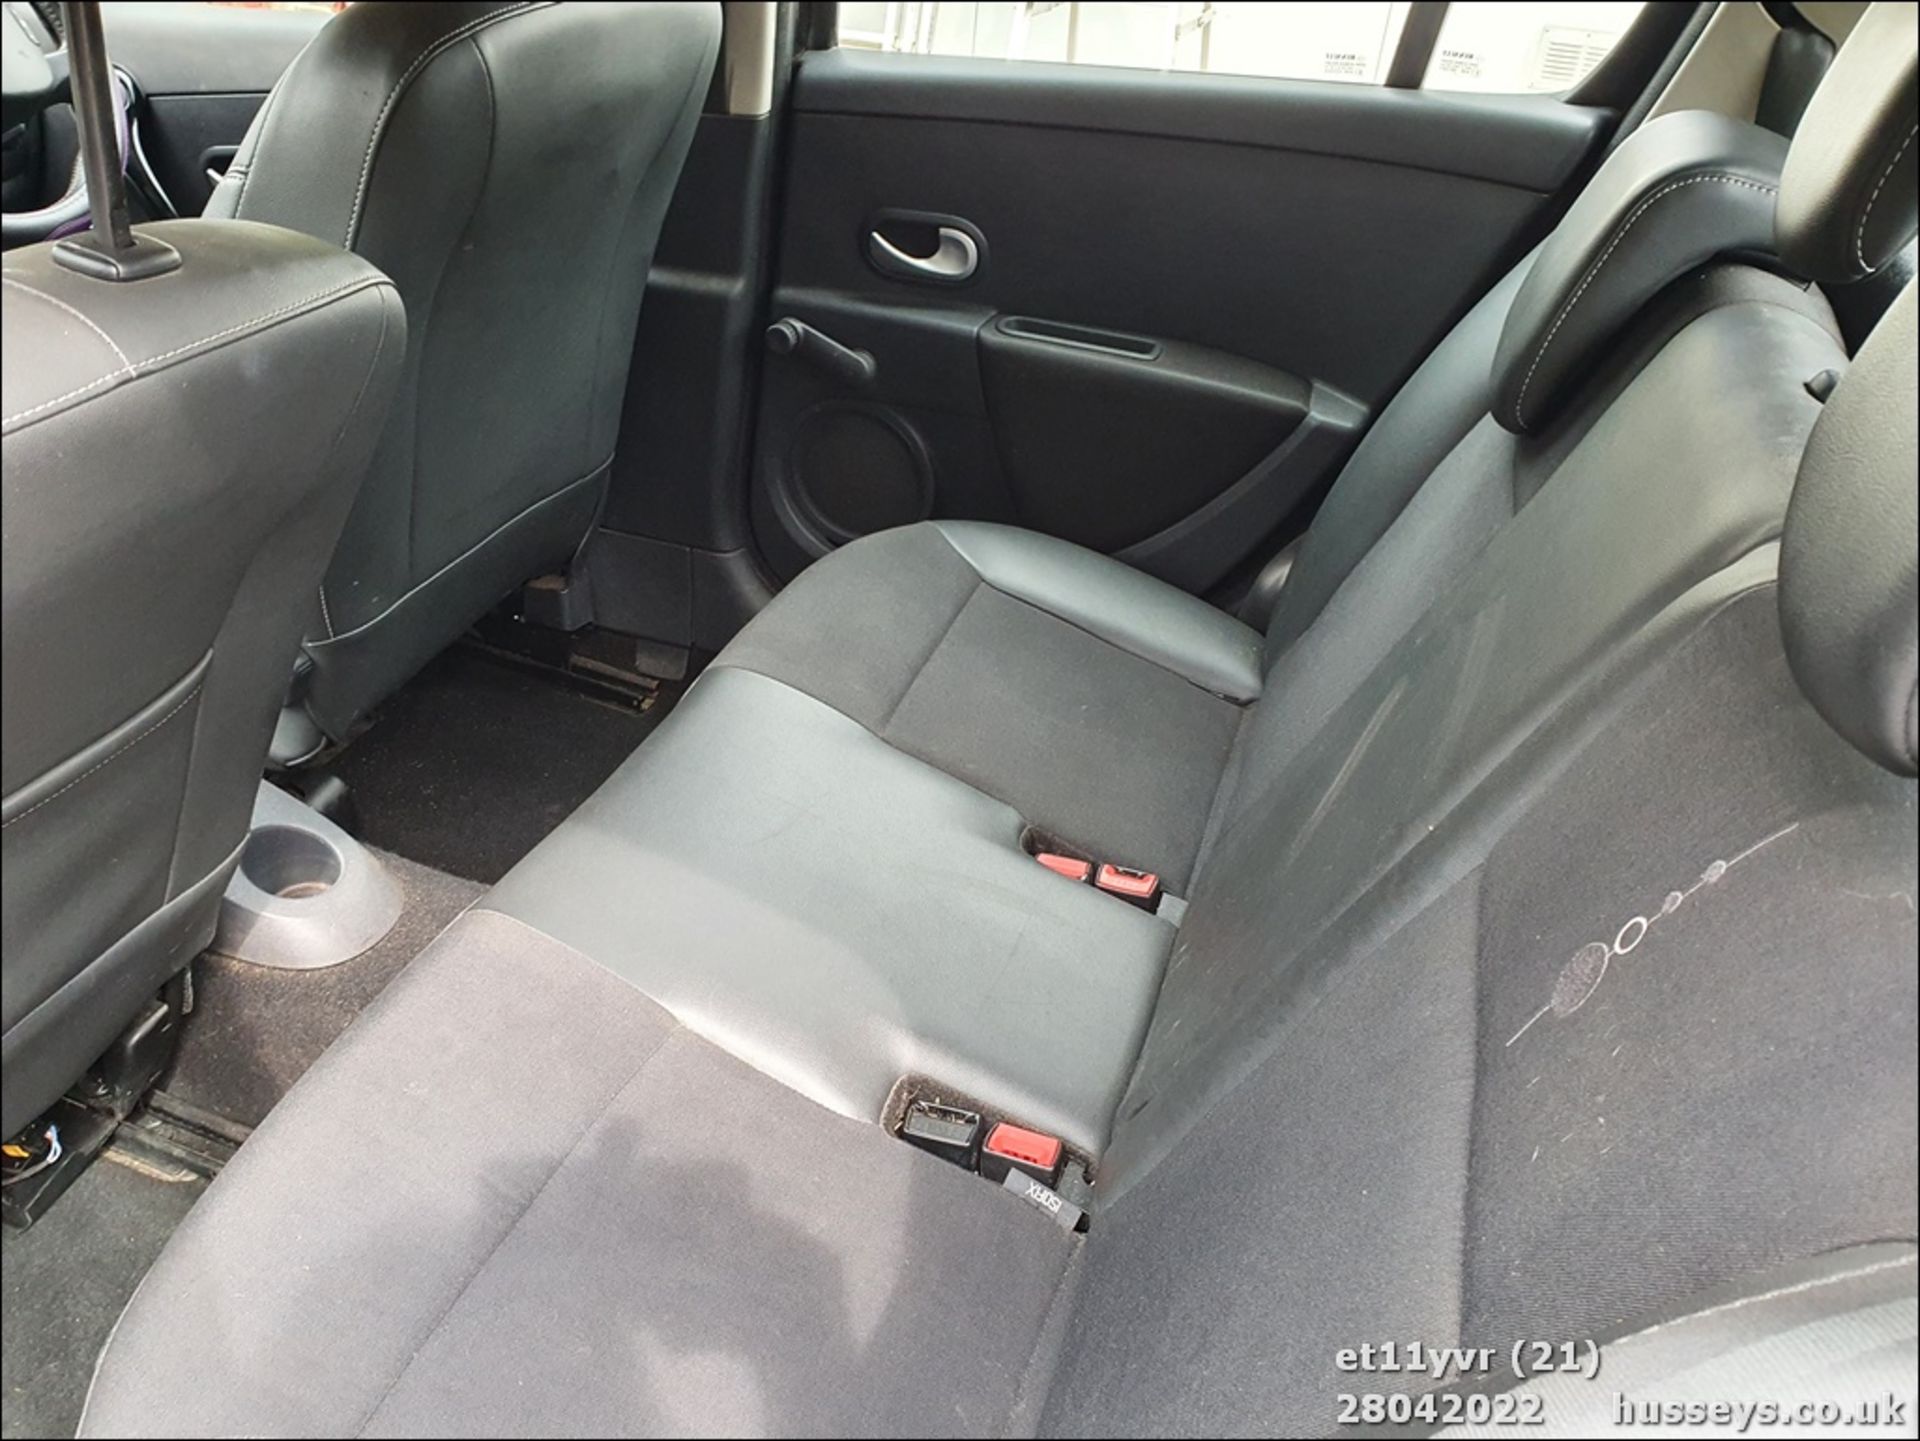 11/11 RENAULT CLIO DYNAMIQUE TOMTOM 16V - 1149cc 5dr Hatchback (Black, 120k) - Image 21 of 27